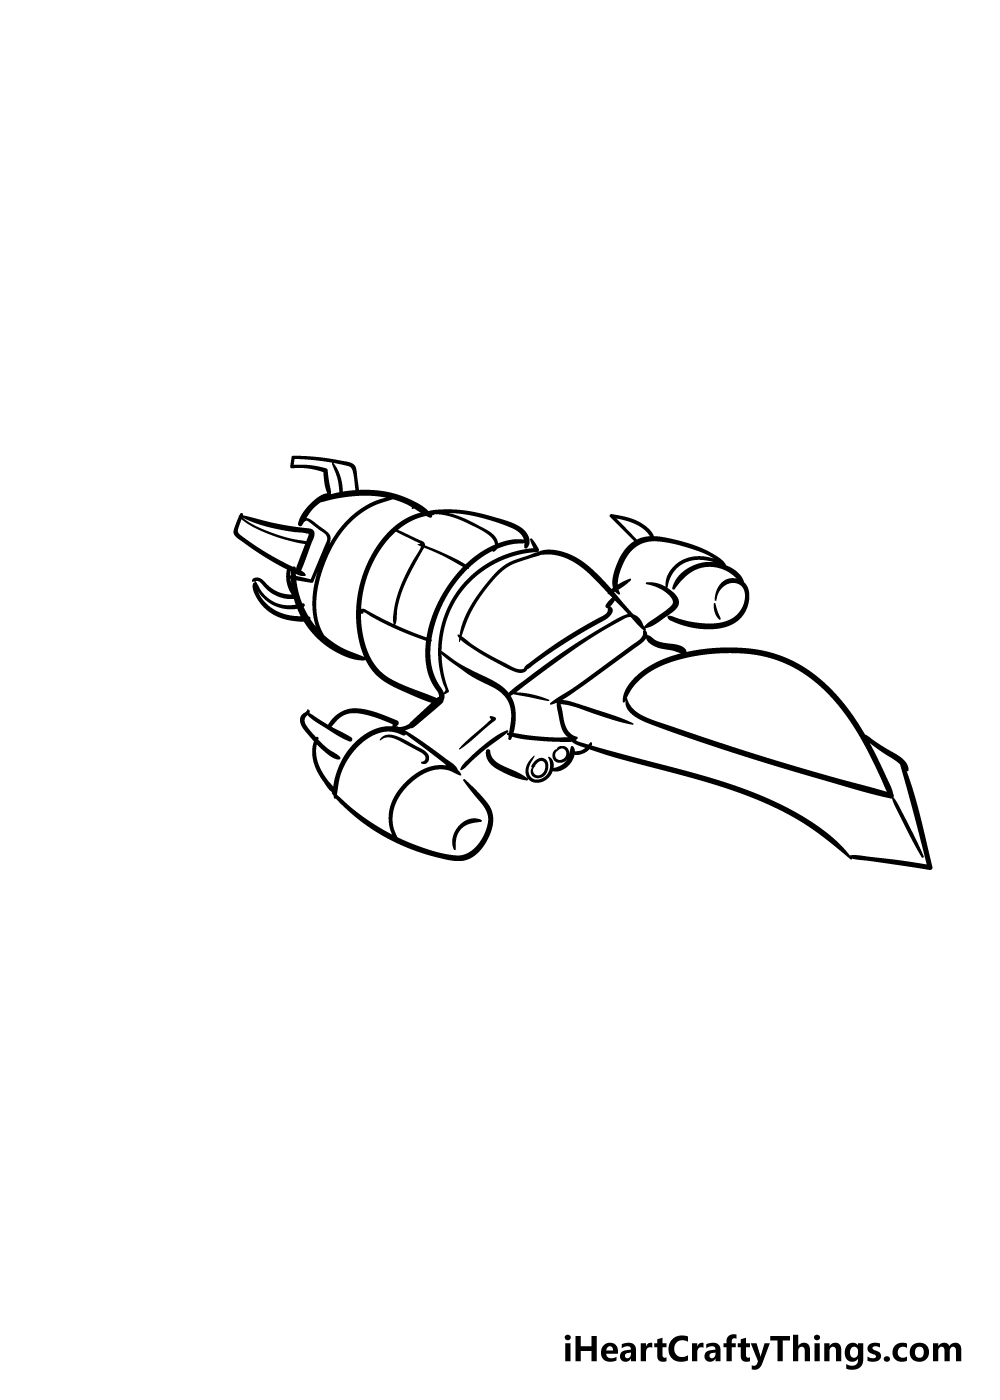 spaceship drawing step 6